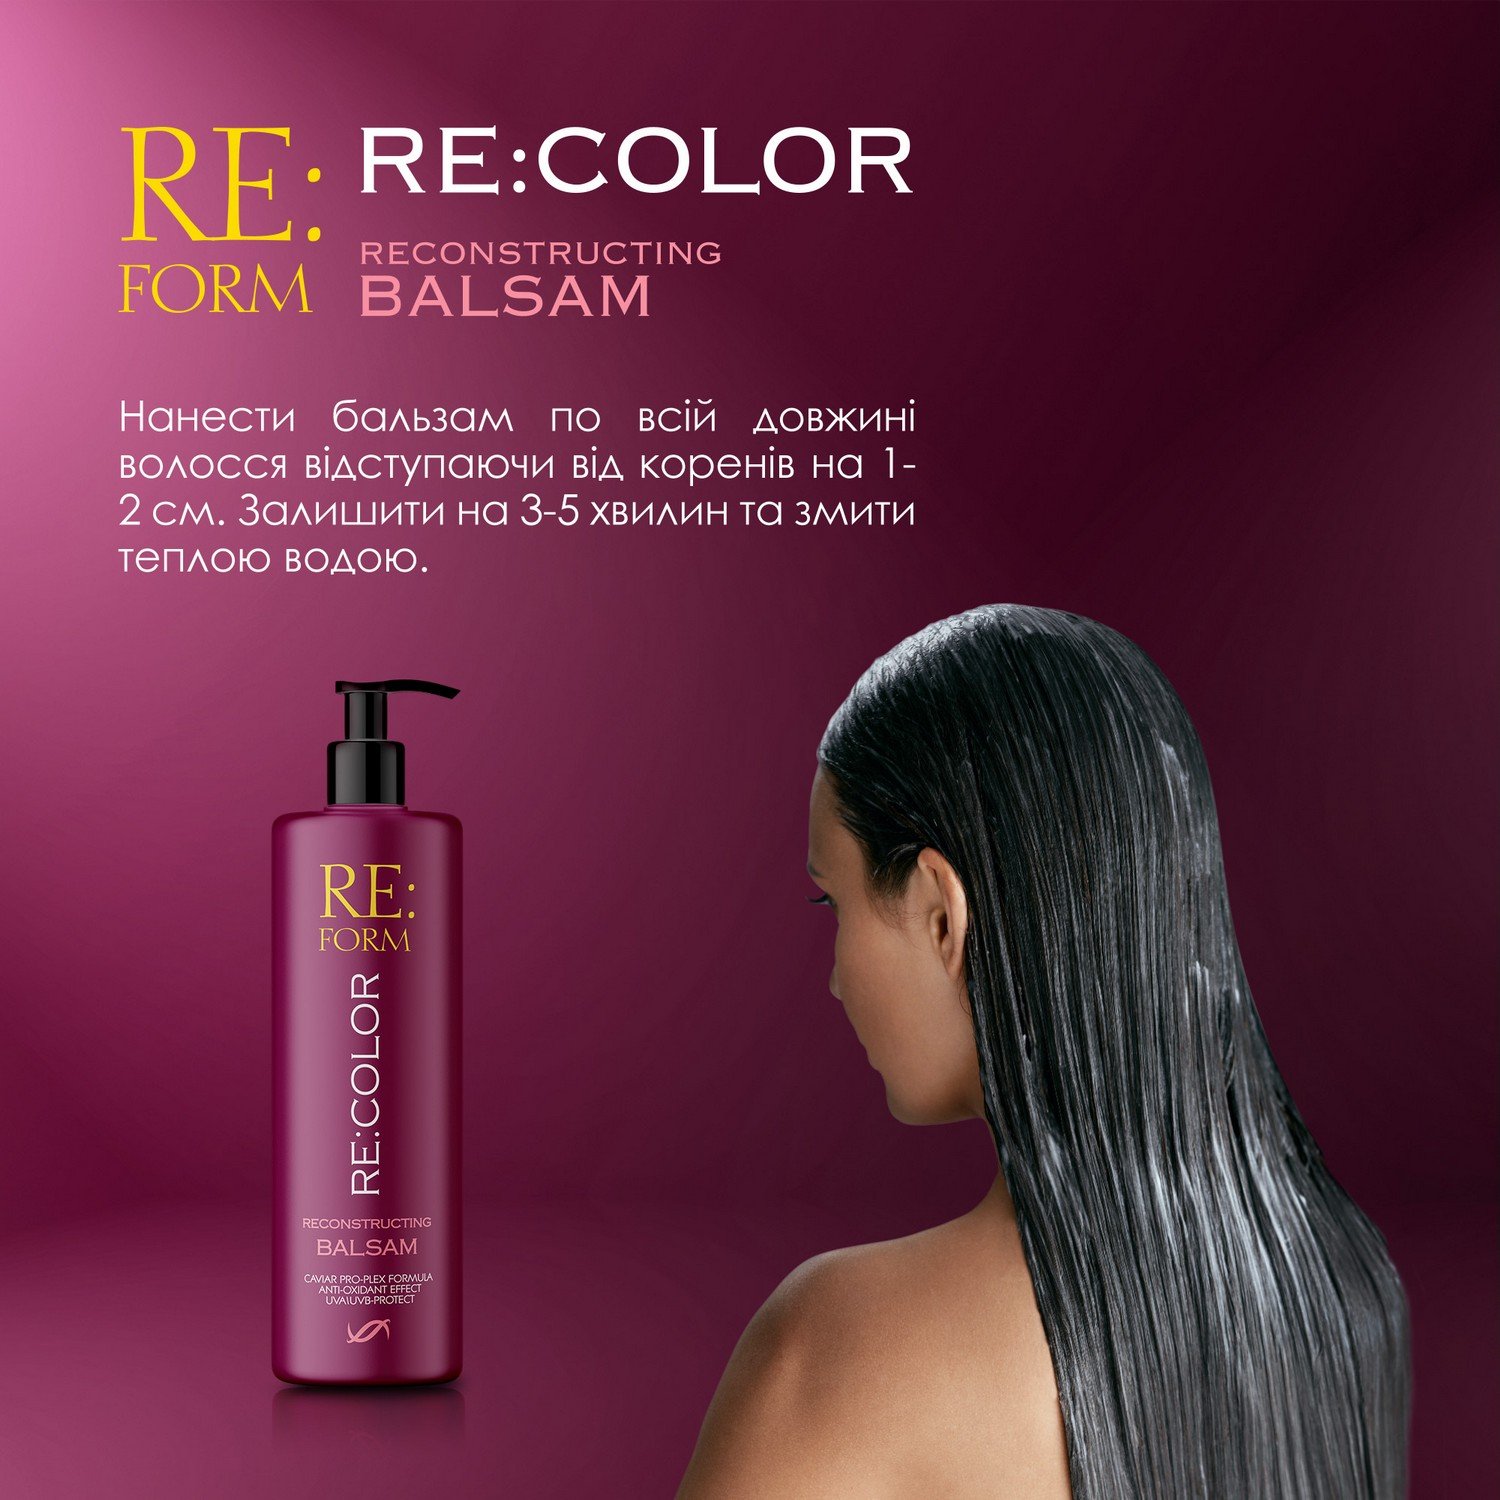 Реконструирующий бальзам Re:form Re:color Сохранение цвета и восстановление окрашенных волос, 400 мл - фото 6